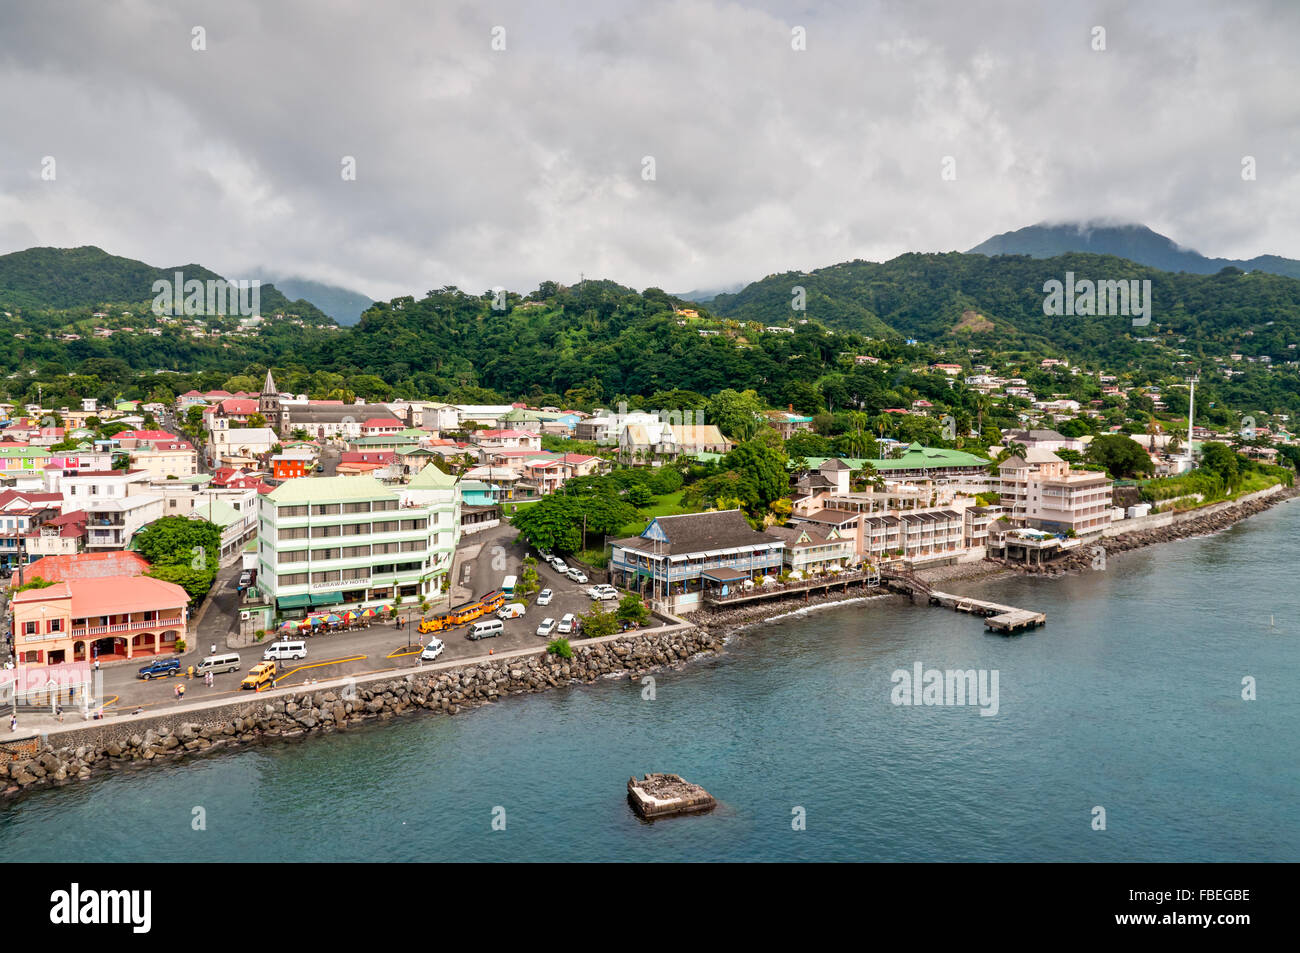 Un panorama de Roseau, capitale de la Dominique, prises à partir d'un bateau avec vue sur la ville. Banque D'Images